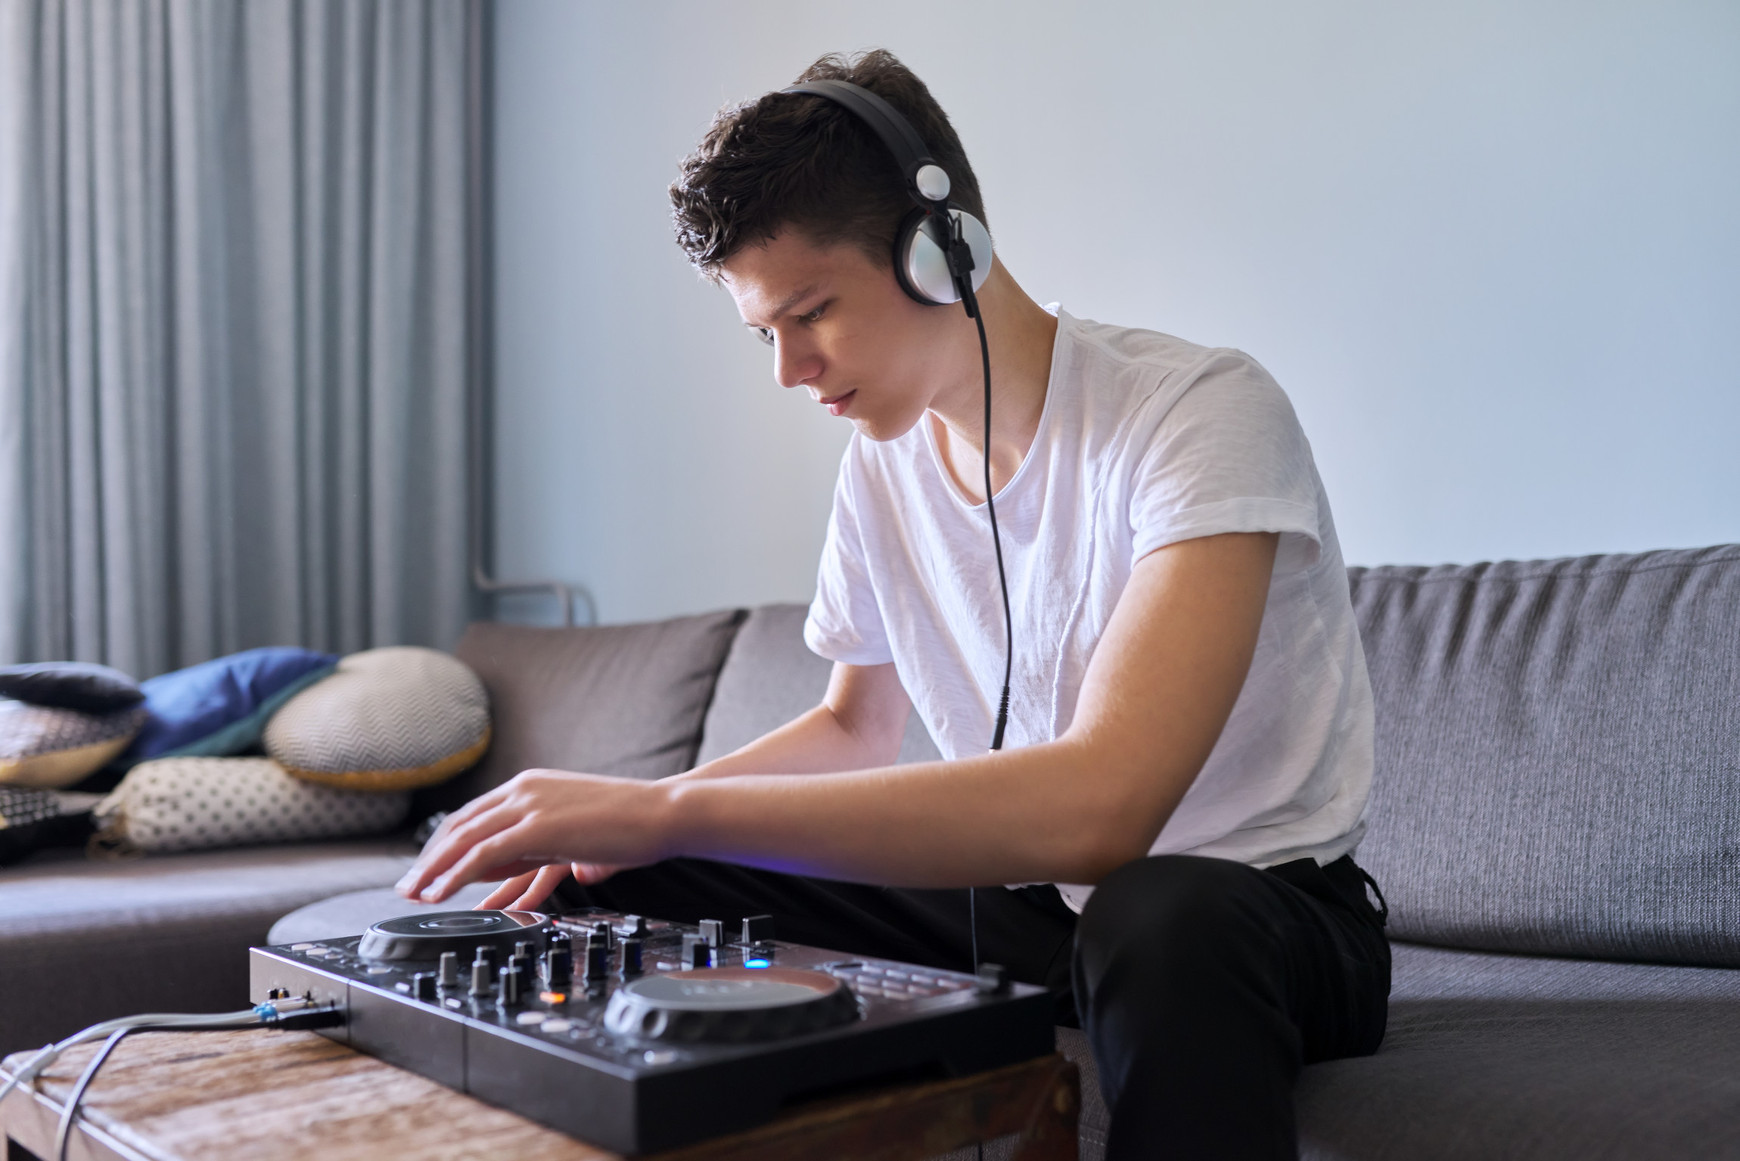 Young man with mixer equipment © VH-studio on Shutterstock Lancer sa carrière musicale à l'ère du numérique - Génération Z #11